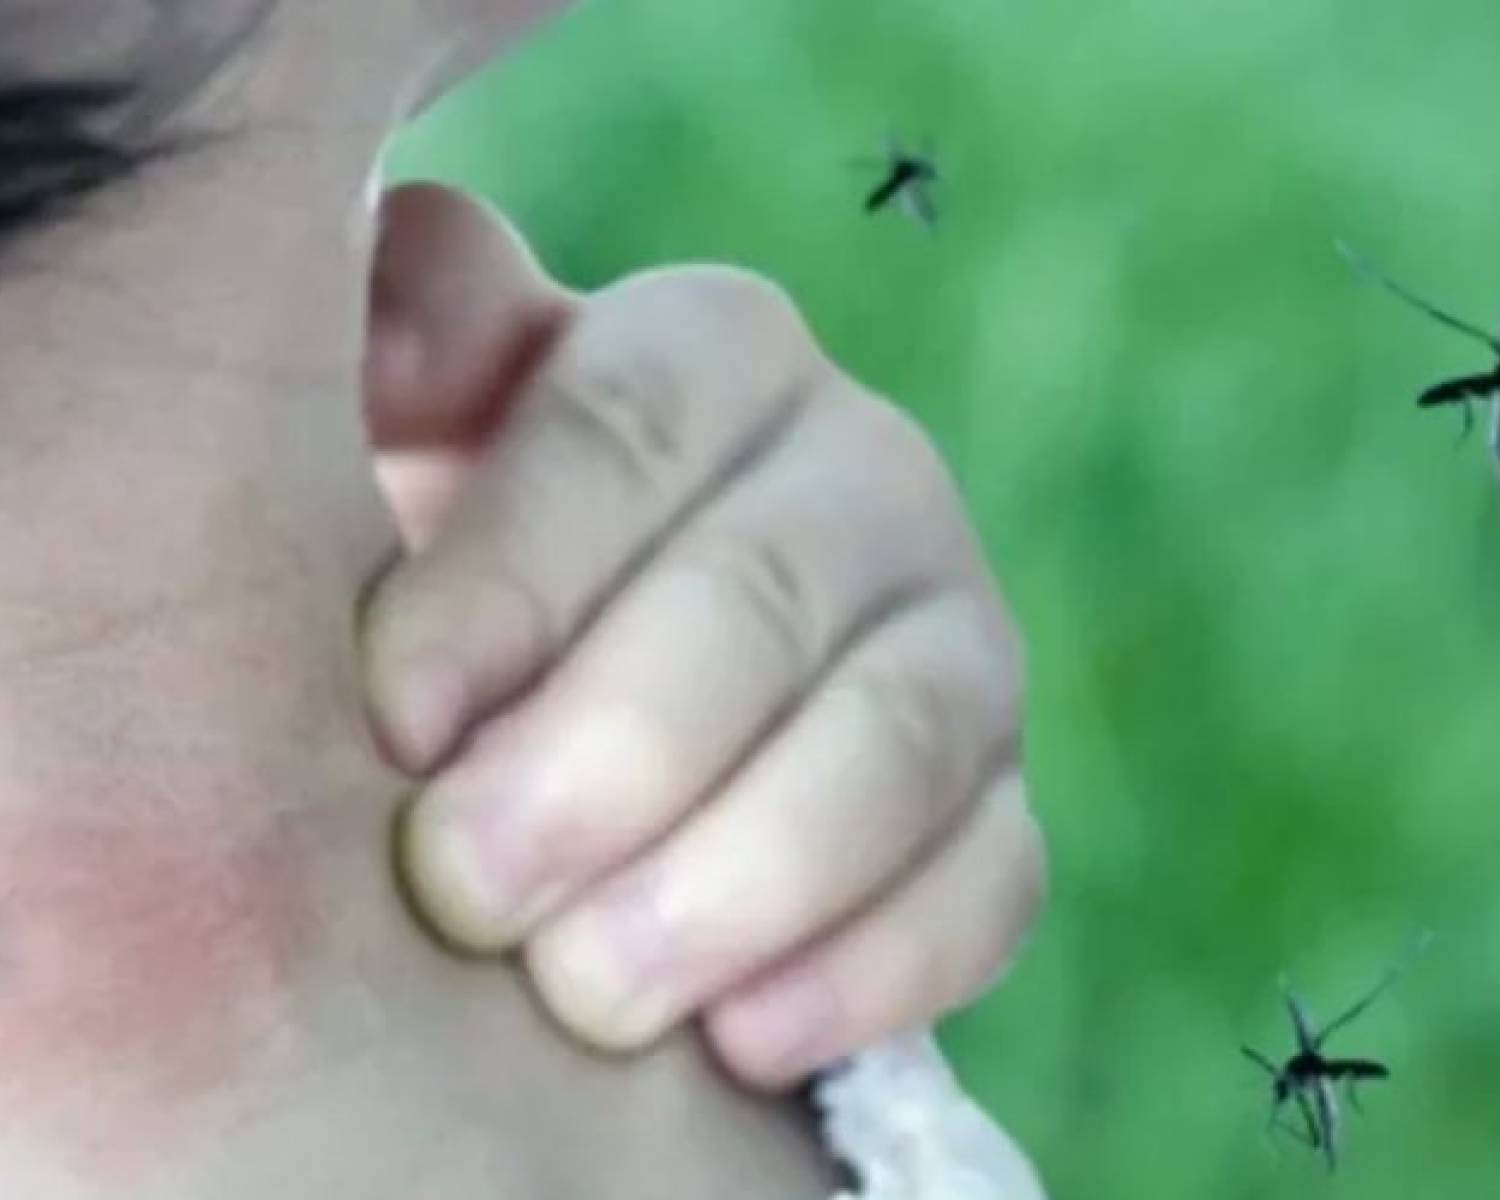 El impactante descubrimiento del Conicet sobre el mosquito que transmite dengue